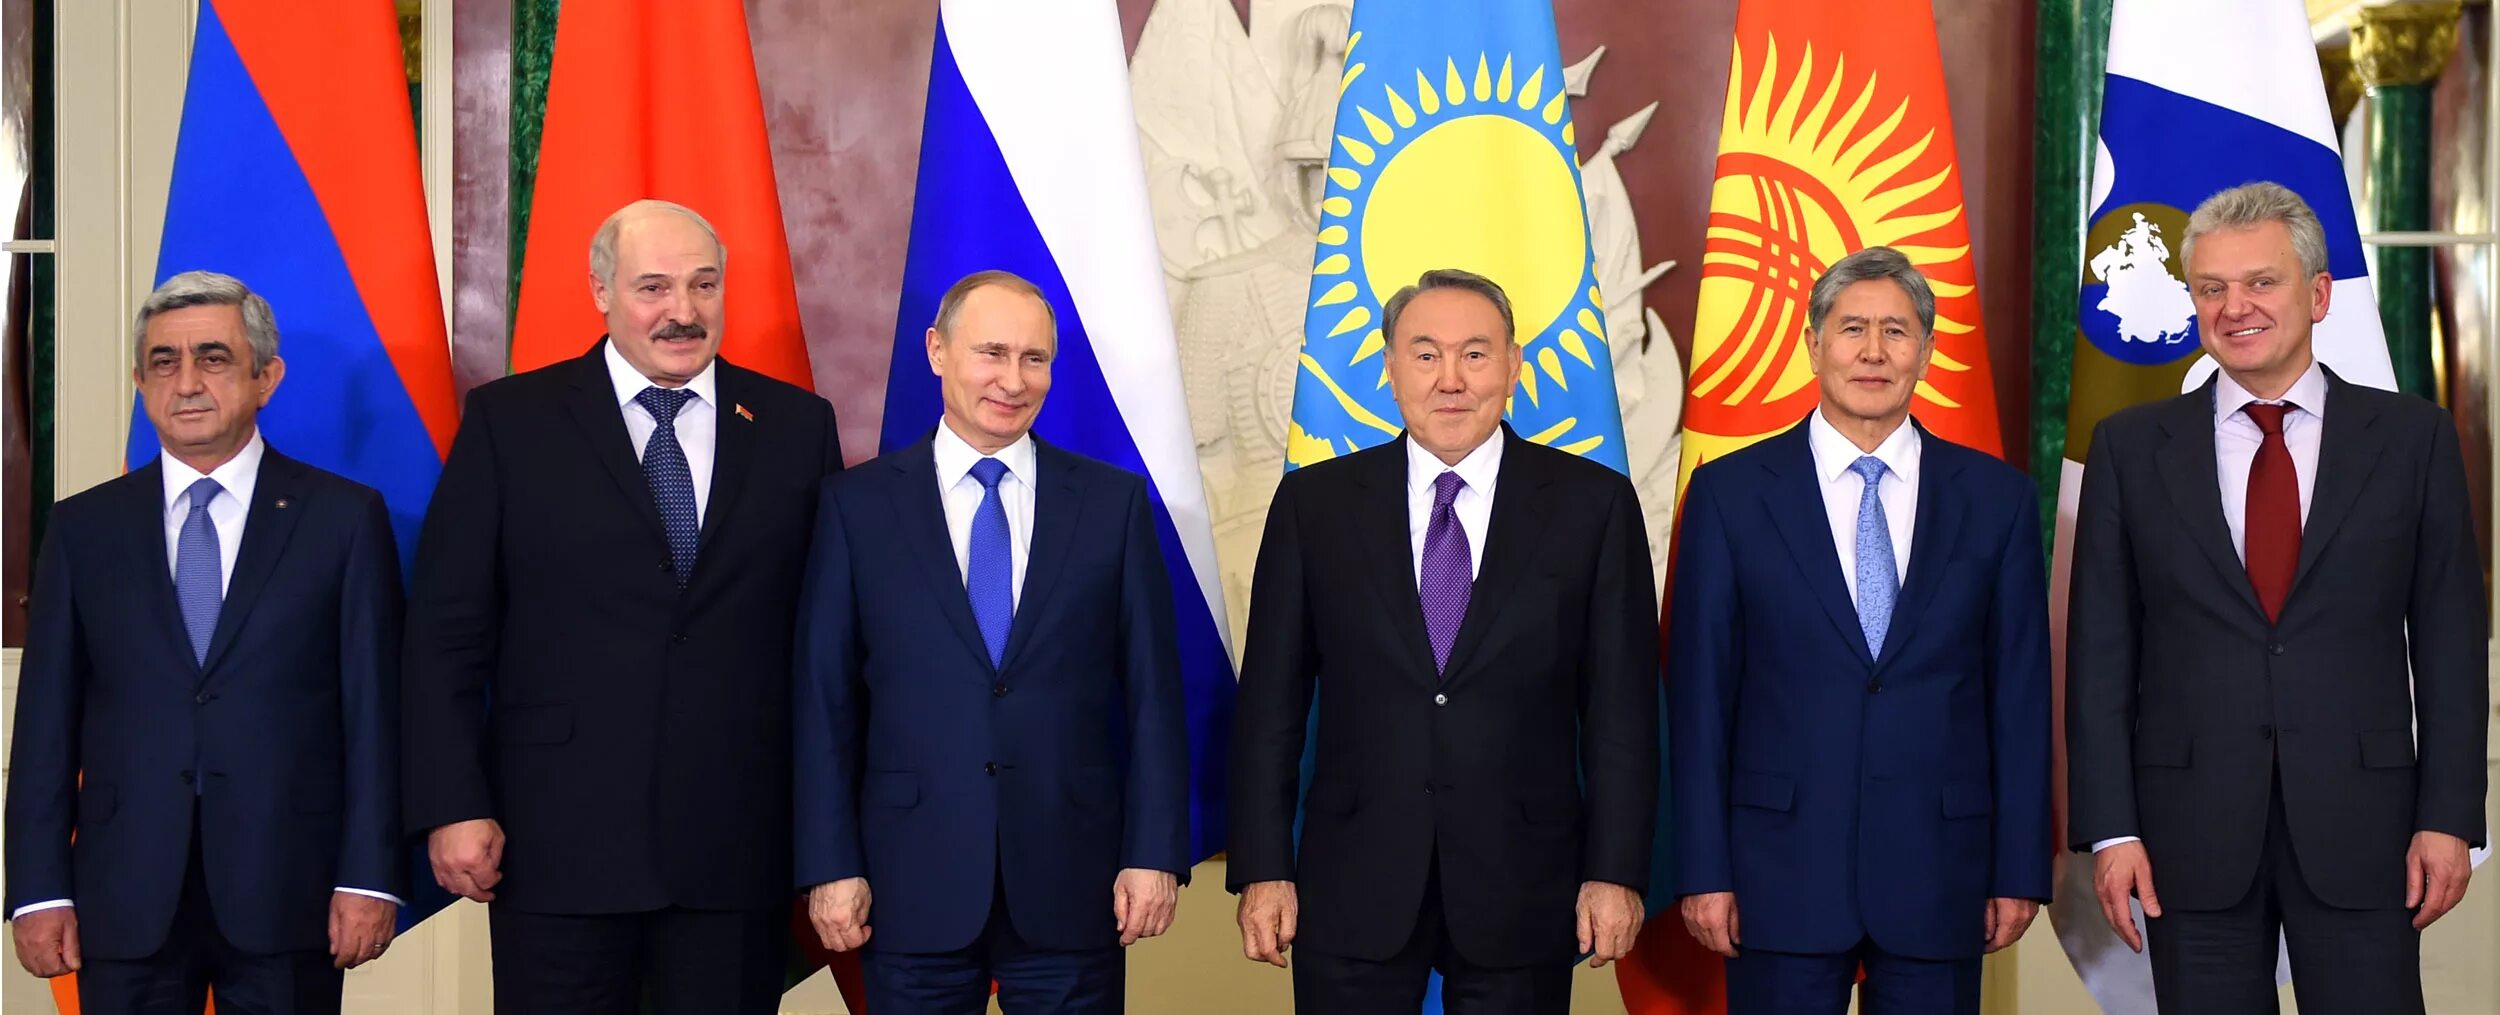 Международное признание казахстана. Саргсян и Обама. Лукашенко Кыргызстан.